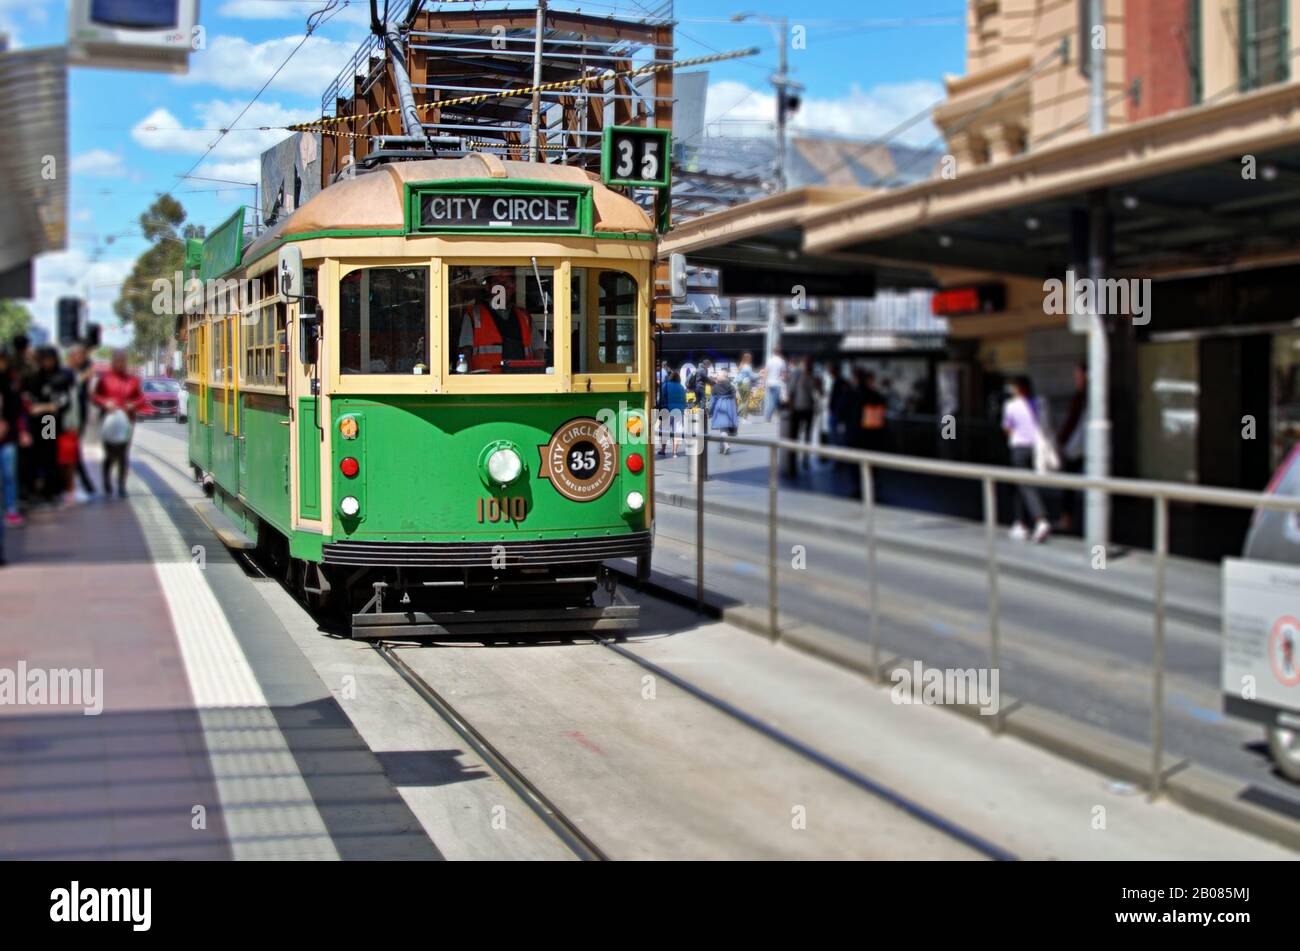 Le tramway City Circle 35, qui fonctionne sur une route circulaire dans le quartier central des affaires de Melbourne, traverse les principales attractions touristiques. Banque D'Images